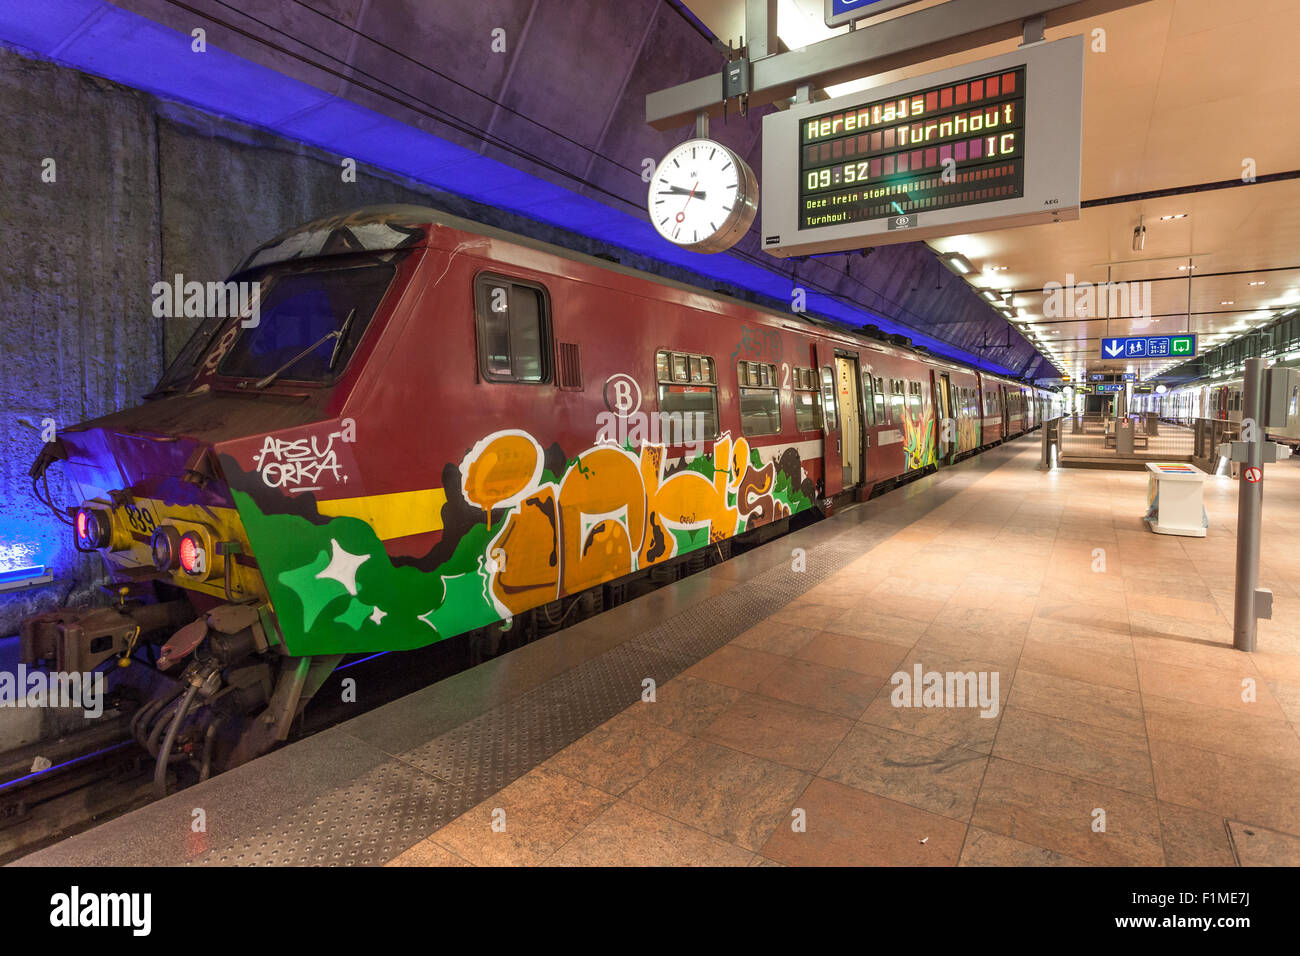 Graffiti Train In Antwerp Belgium Stock Photo Alamy